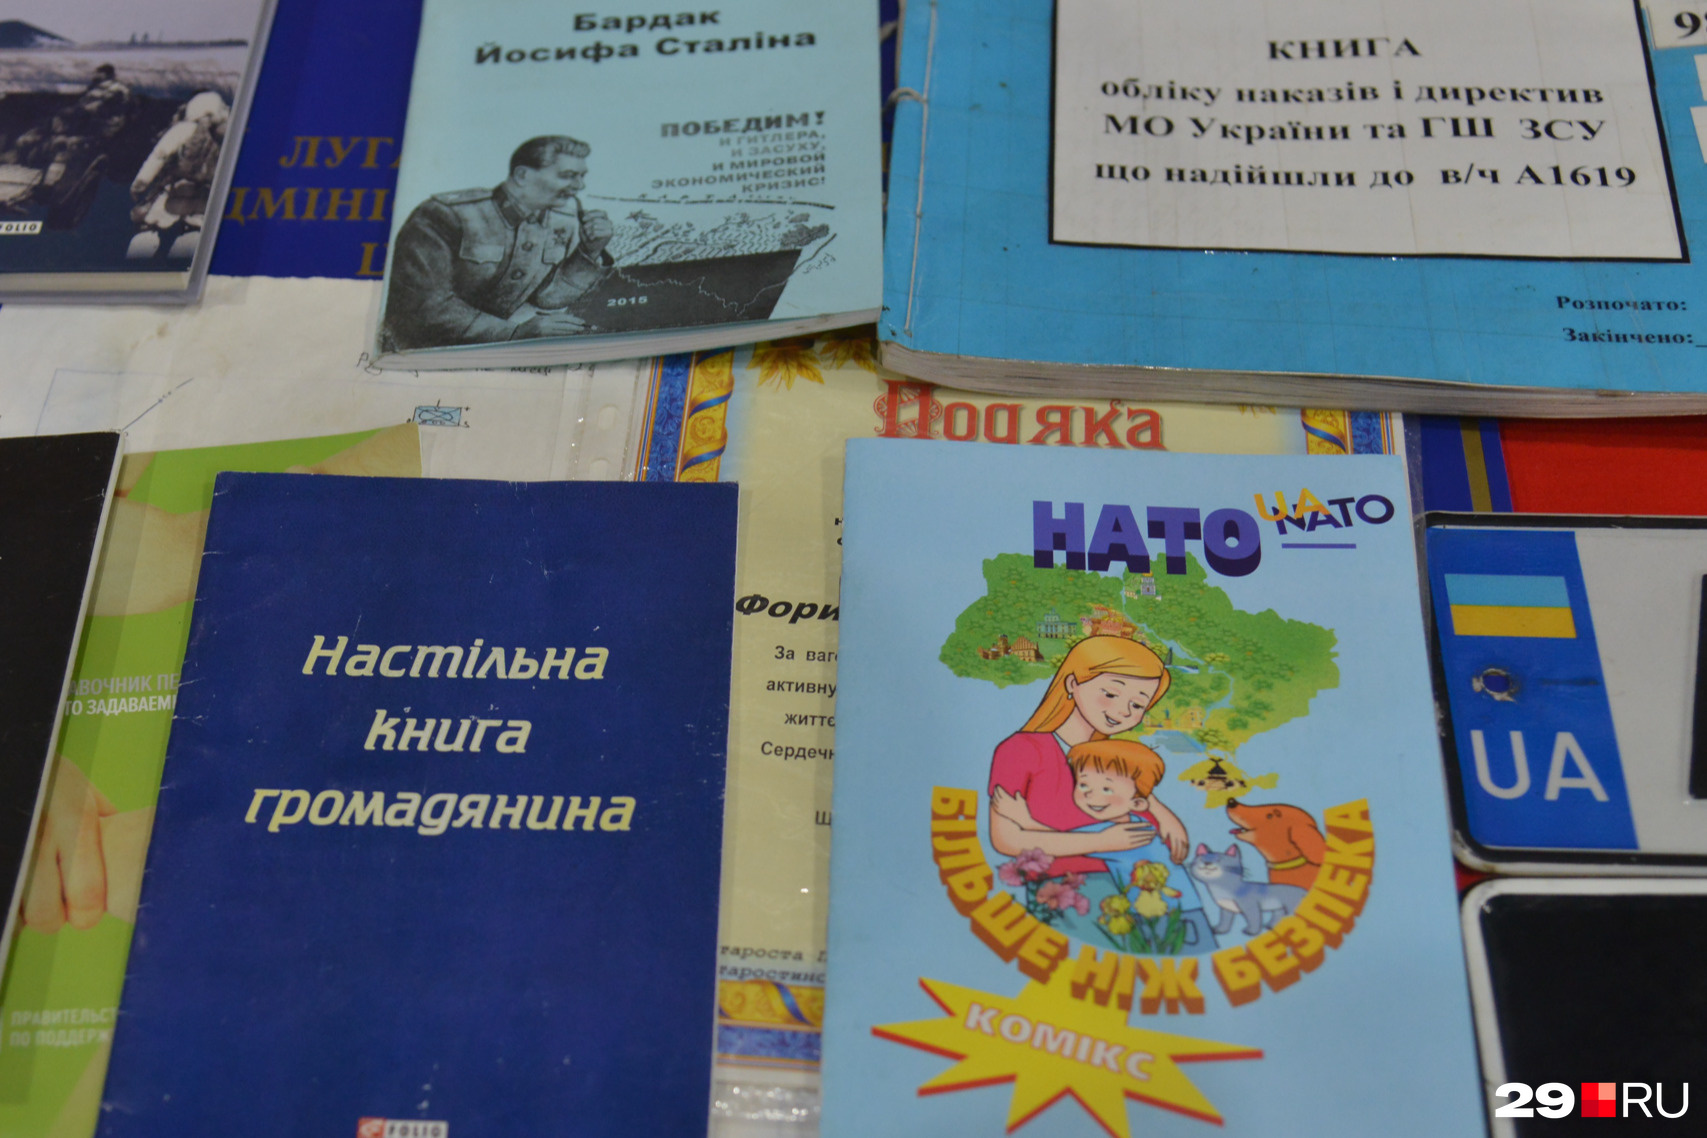 Как сообщали организаторы, на борту можно увидеть нацистскую литературу и атрибутику, добытую российскими военными в ходе СВО. Мы встретили, например, комикс про НАТО на украинском языке